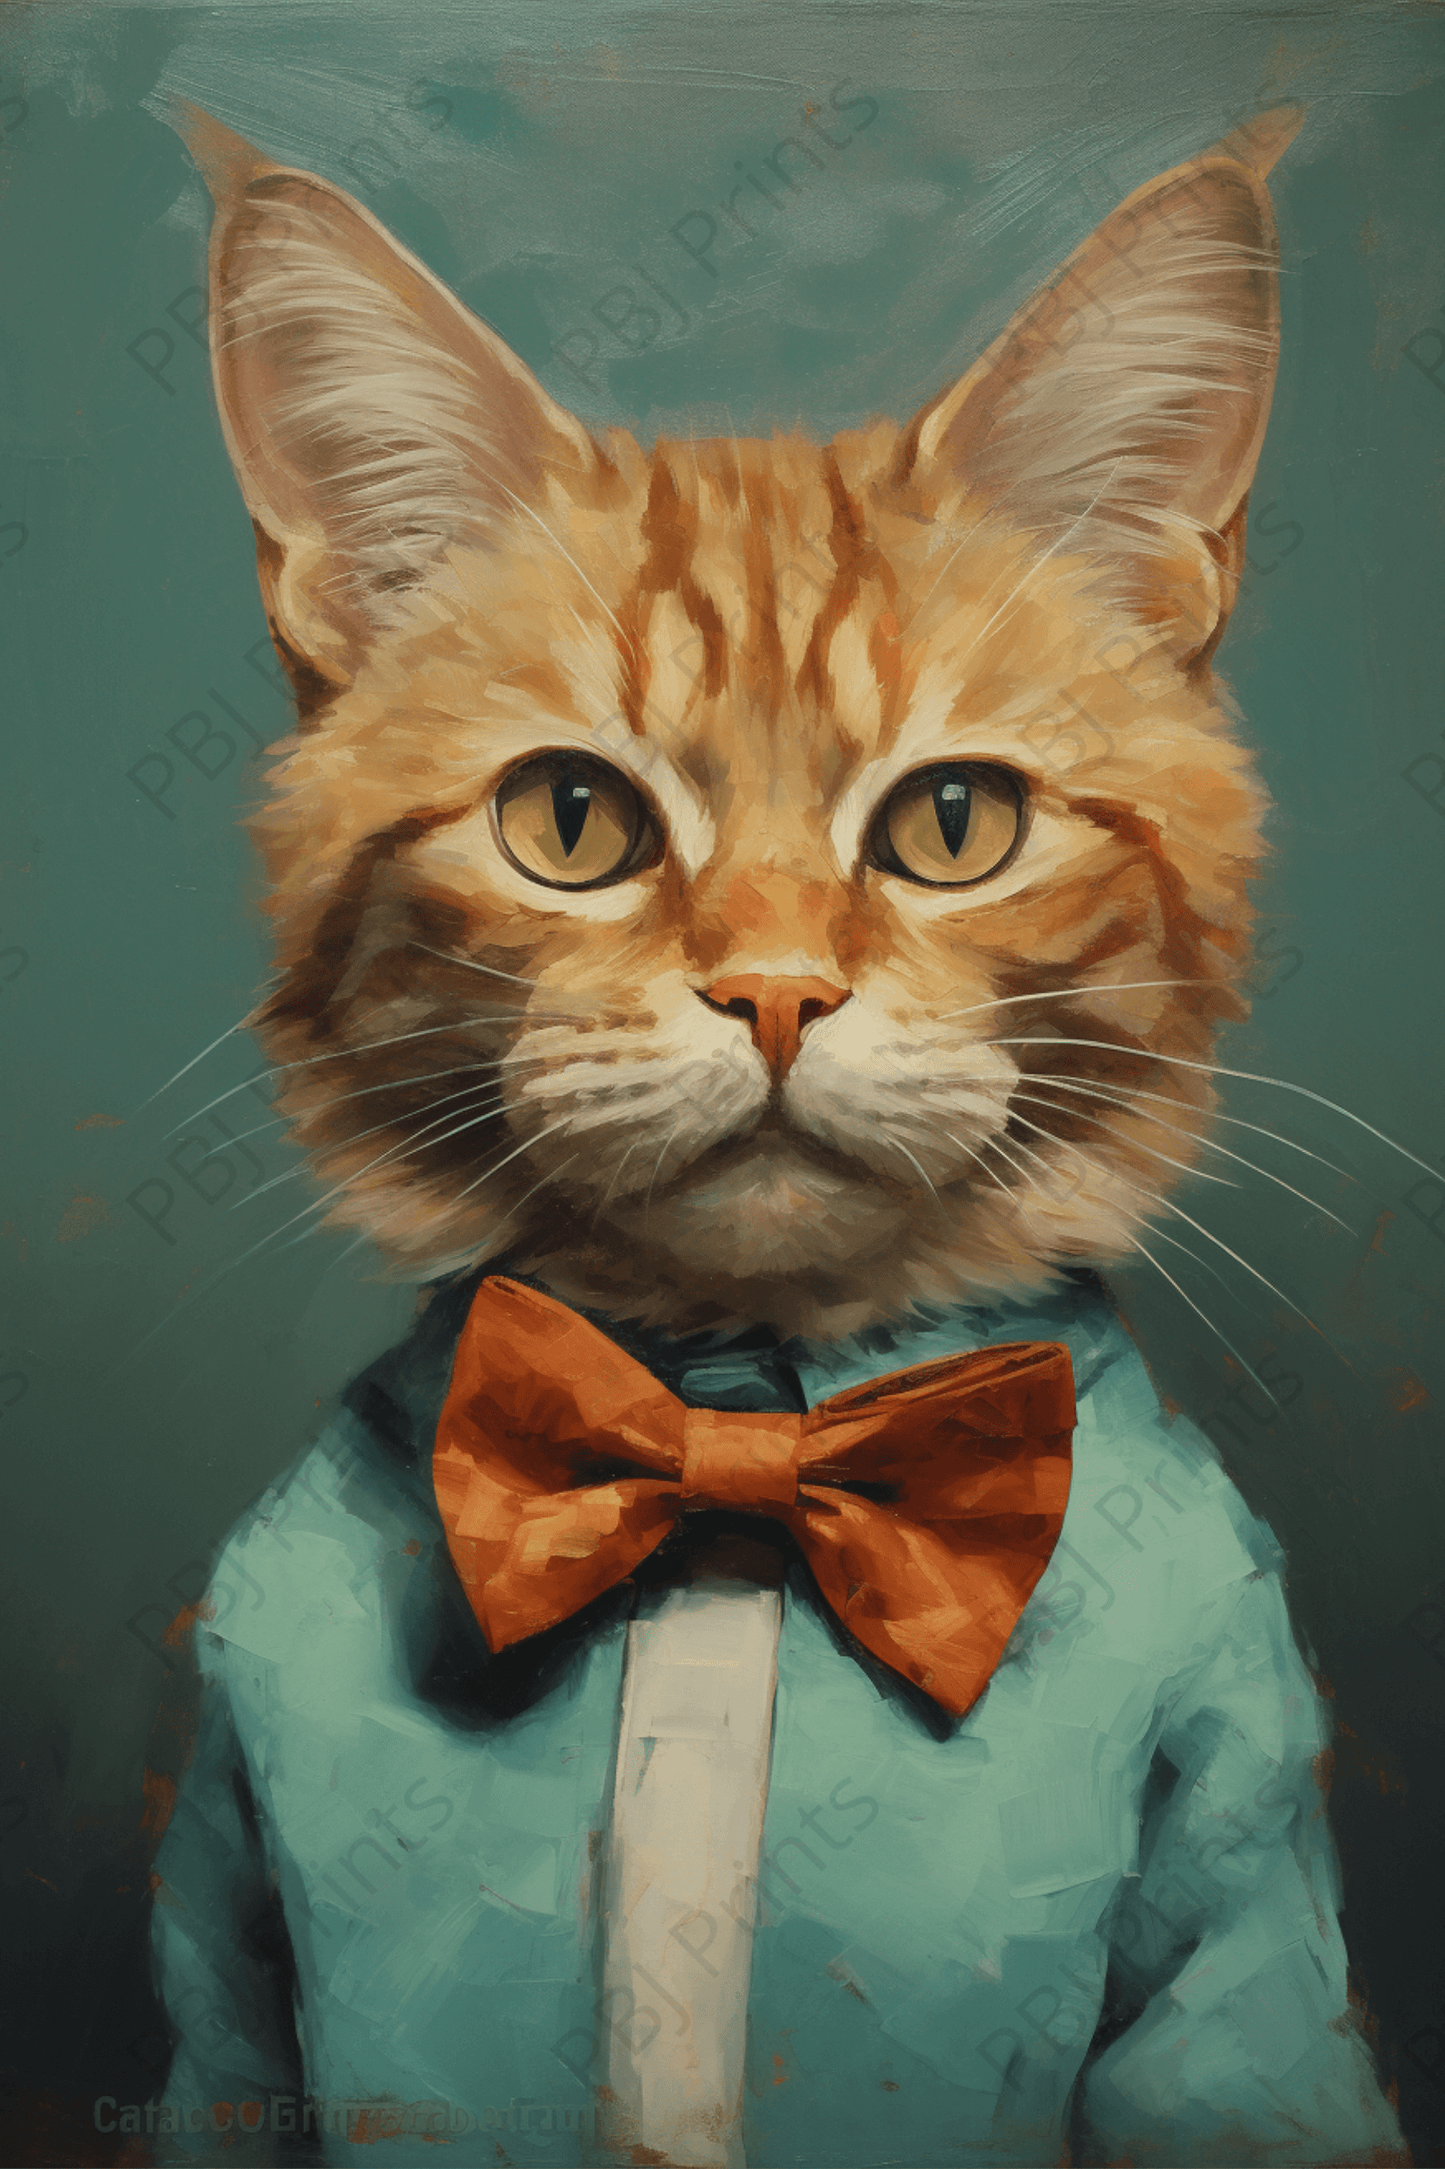 Oscar the Cat - Artist by Audrey Hughes - 